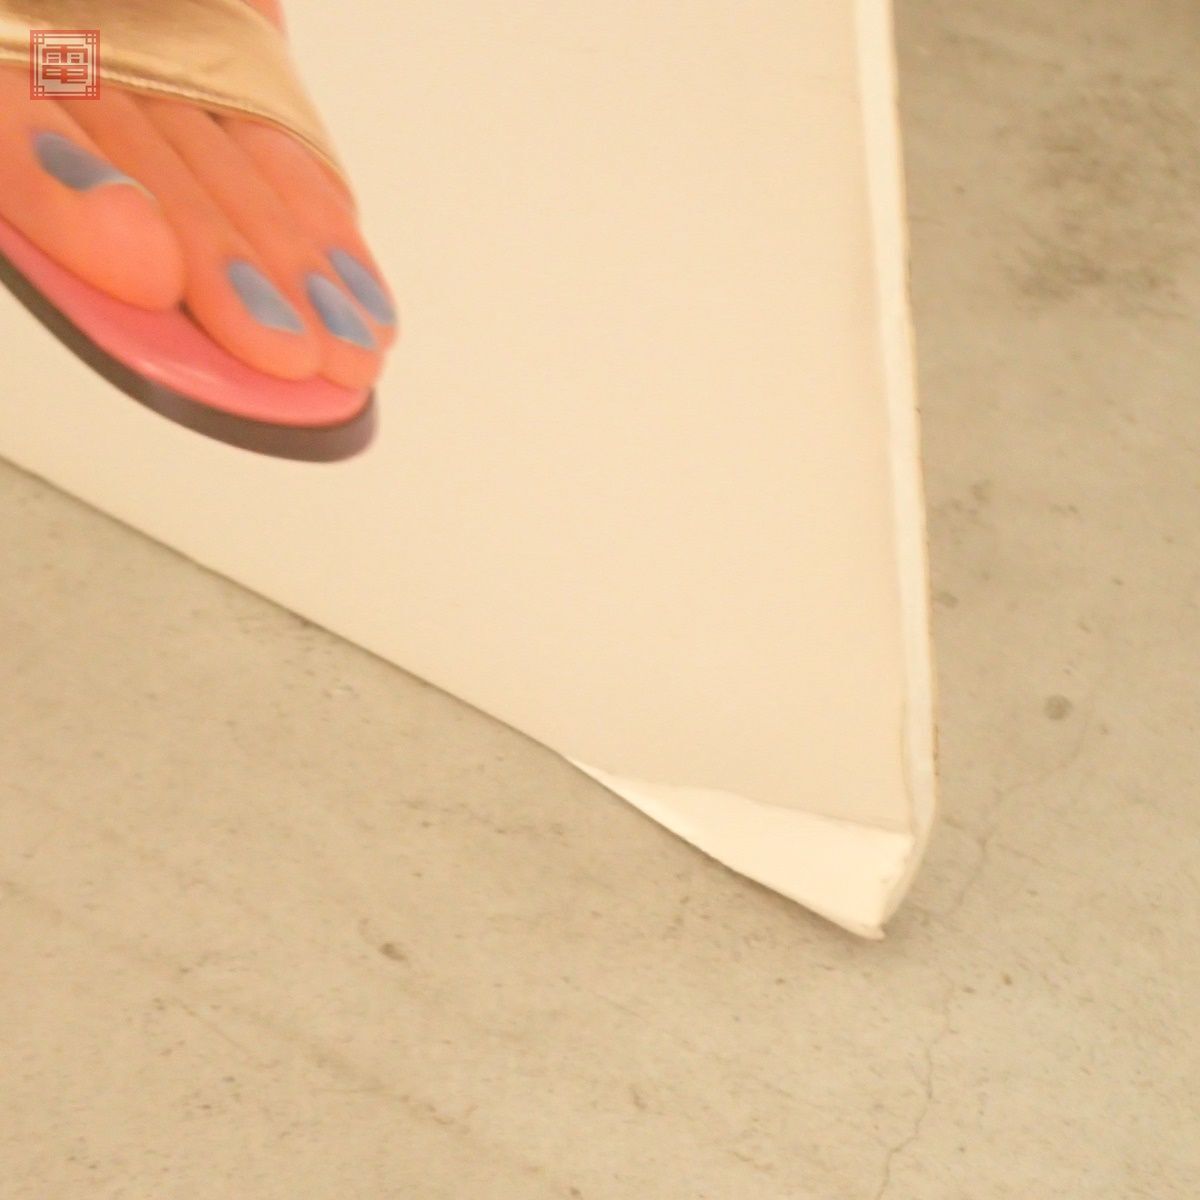  Uehara Takako DoCoMo в натуральную величину panel i-mode не продается размер примерно 180×75cm в натуральную величину pop DoCoMo i MODE SPEED.. товар [FH